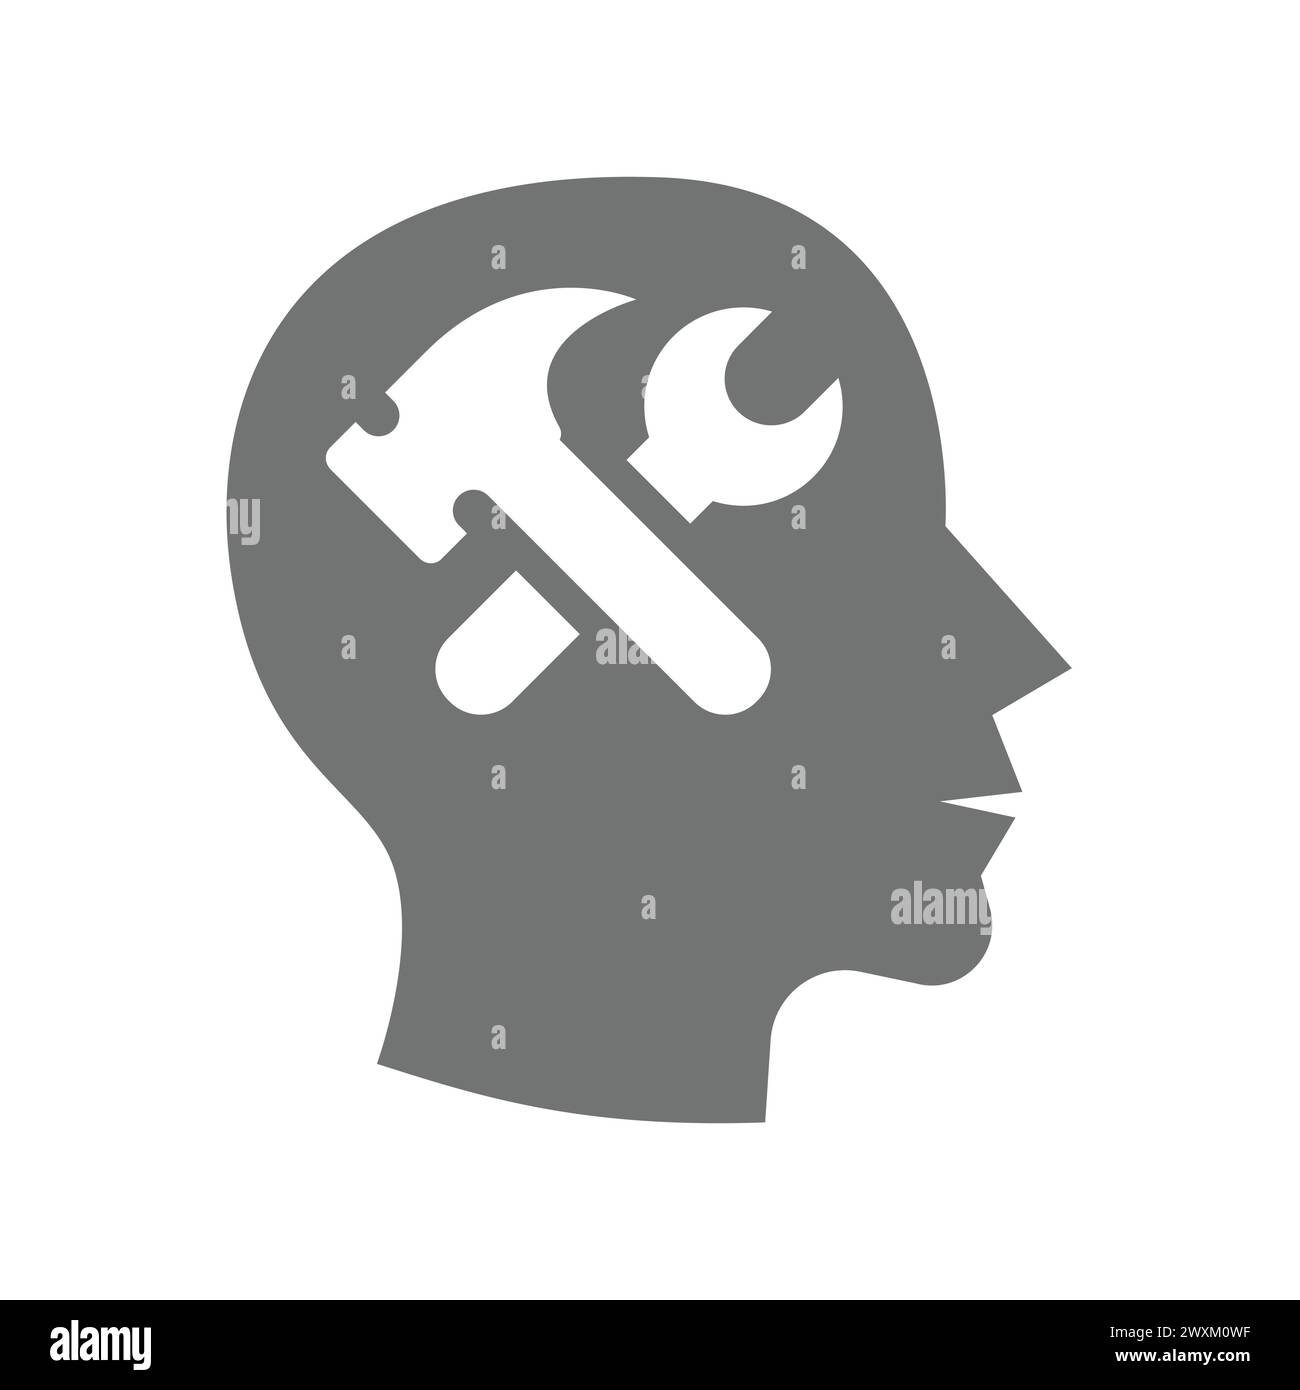 Menschliches Gehirn, Denken, Intellekt und Intelligenzvektor. Menschliches Design mit Schlüssel- und Hammersymbol. Stock Vektor